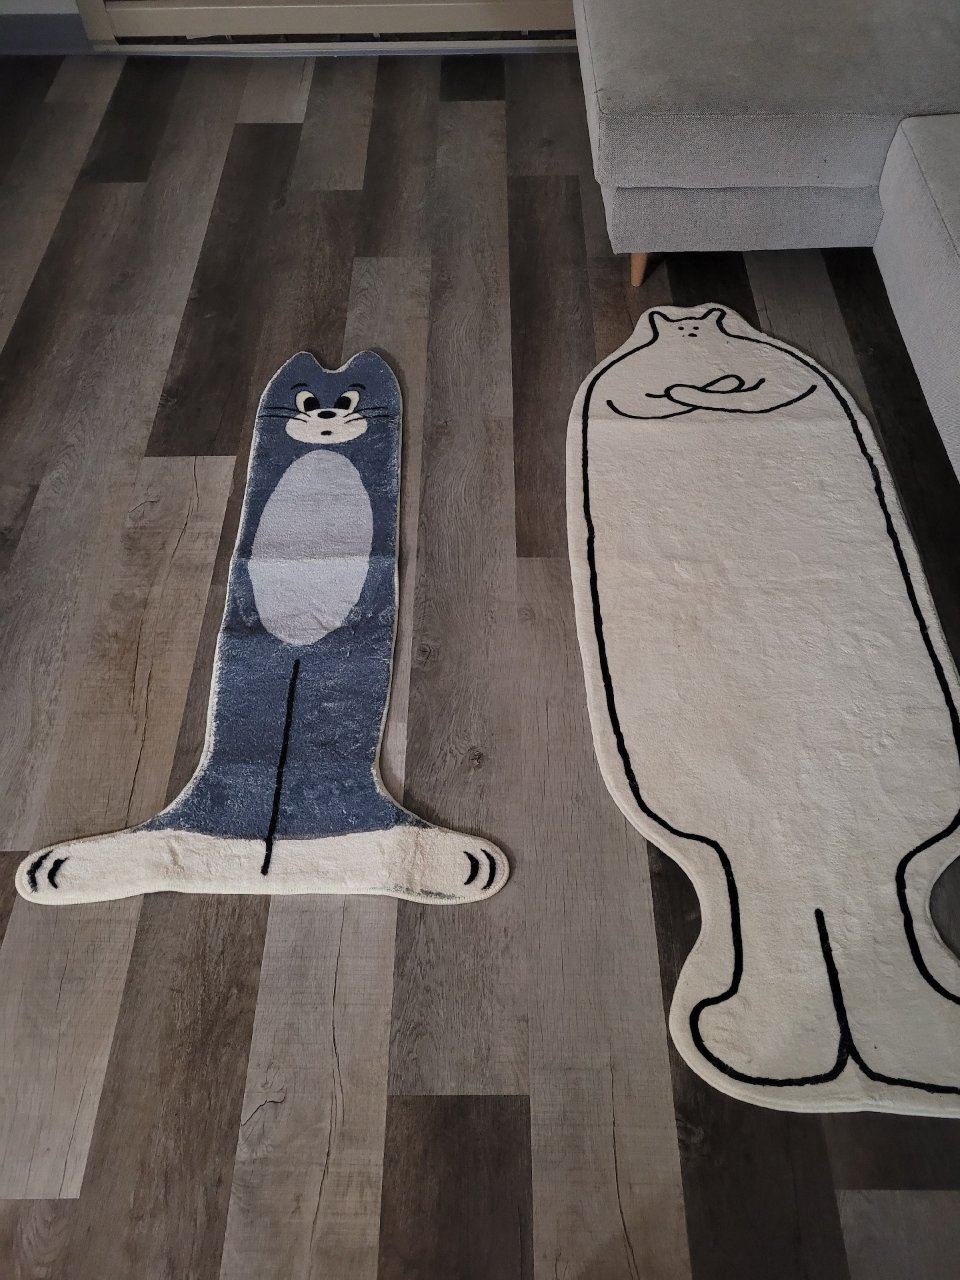 【1月份开箱】Tom猫地毯是个小不点...